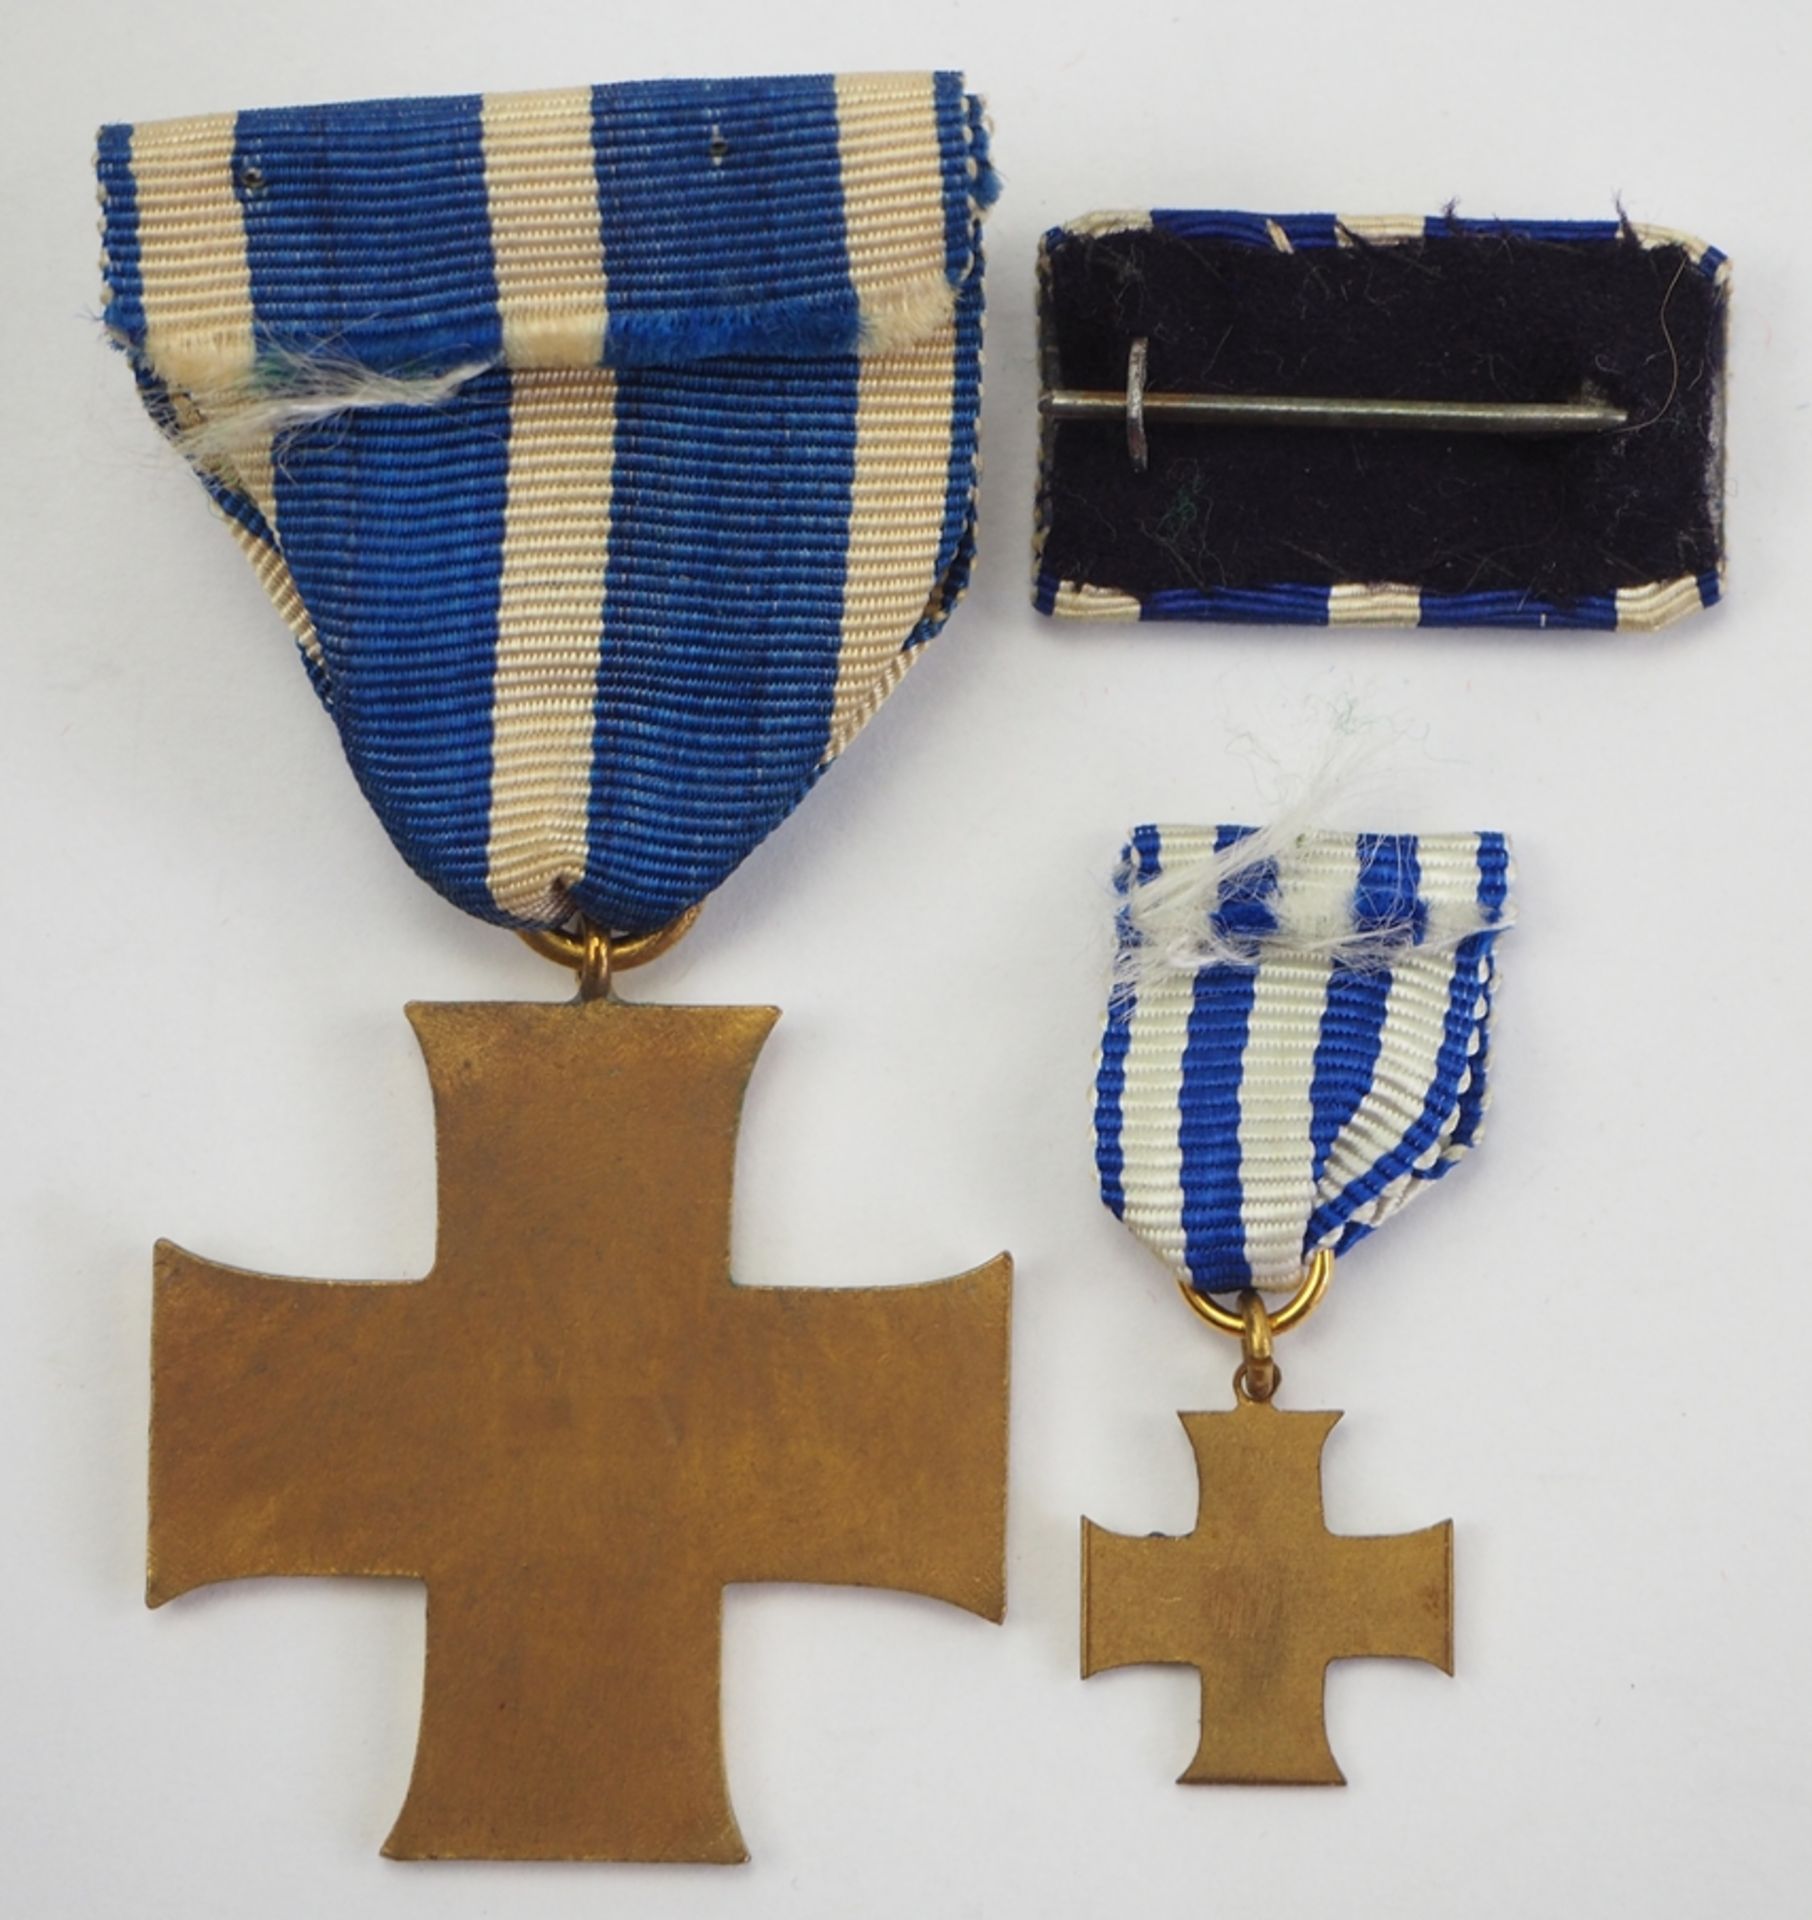 Schaumburg-Lippe: Kreuz für Treue Dienste (1914-1918), mit Miniatur. - Image 2 of 2